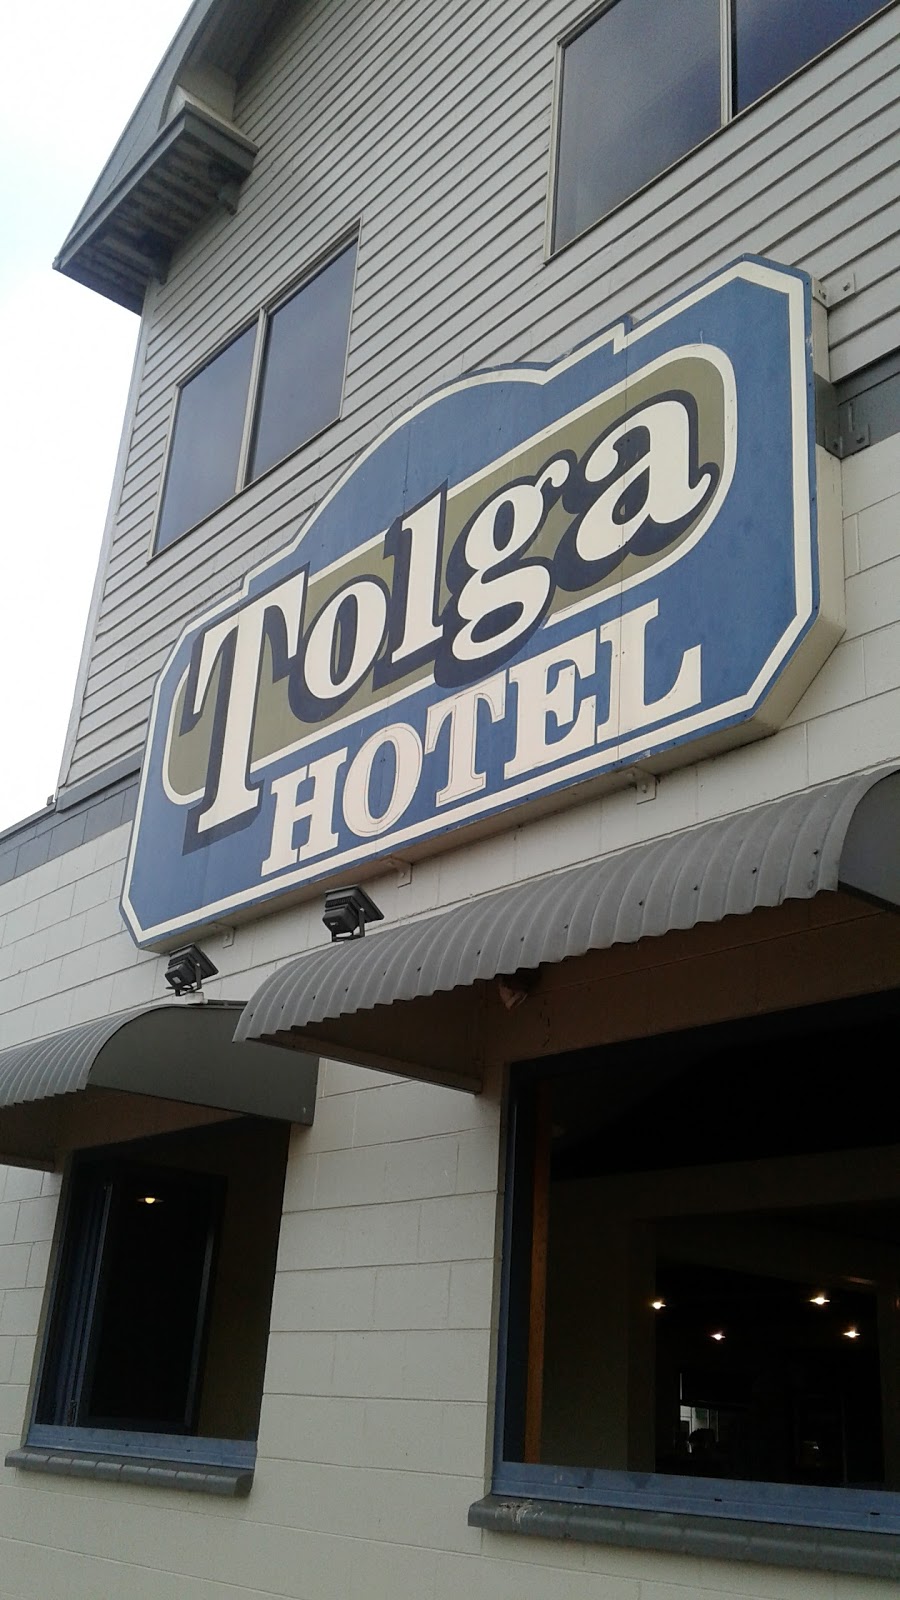 Tolga Hotel | lodging | 23 Main St, Tolga QLD 4882, Australia | 0740954106 OR +61 7 4095 4106